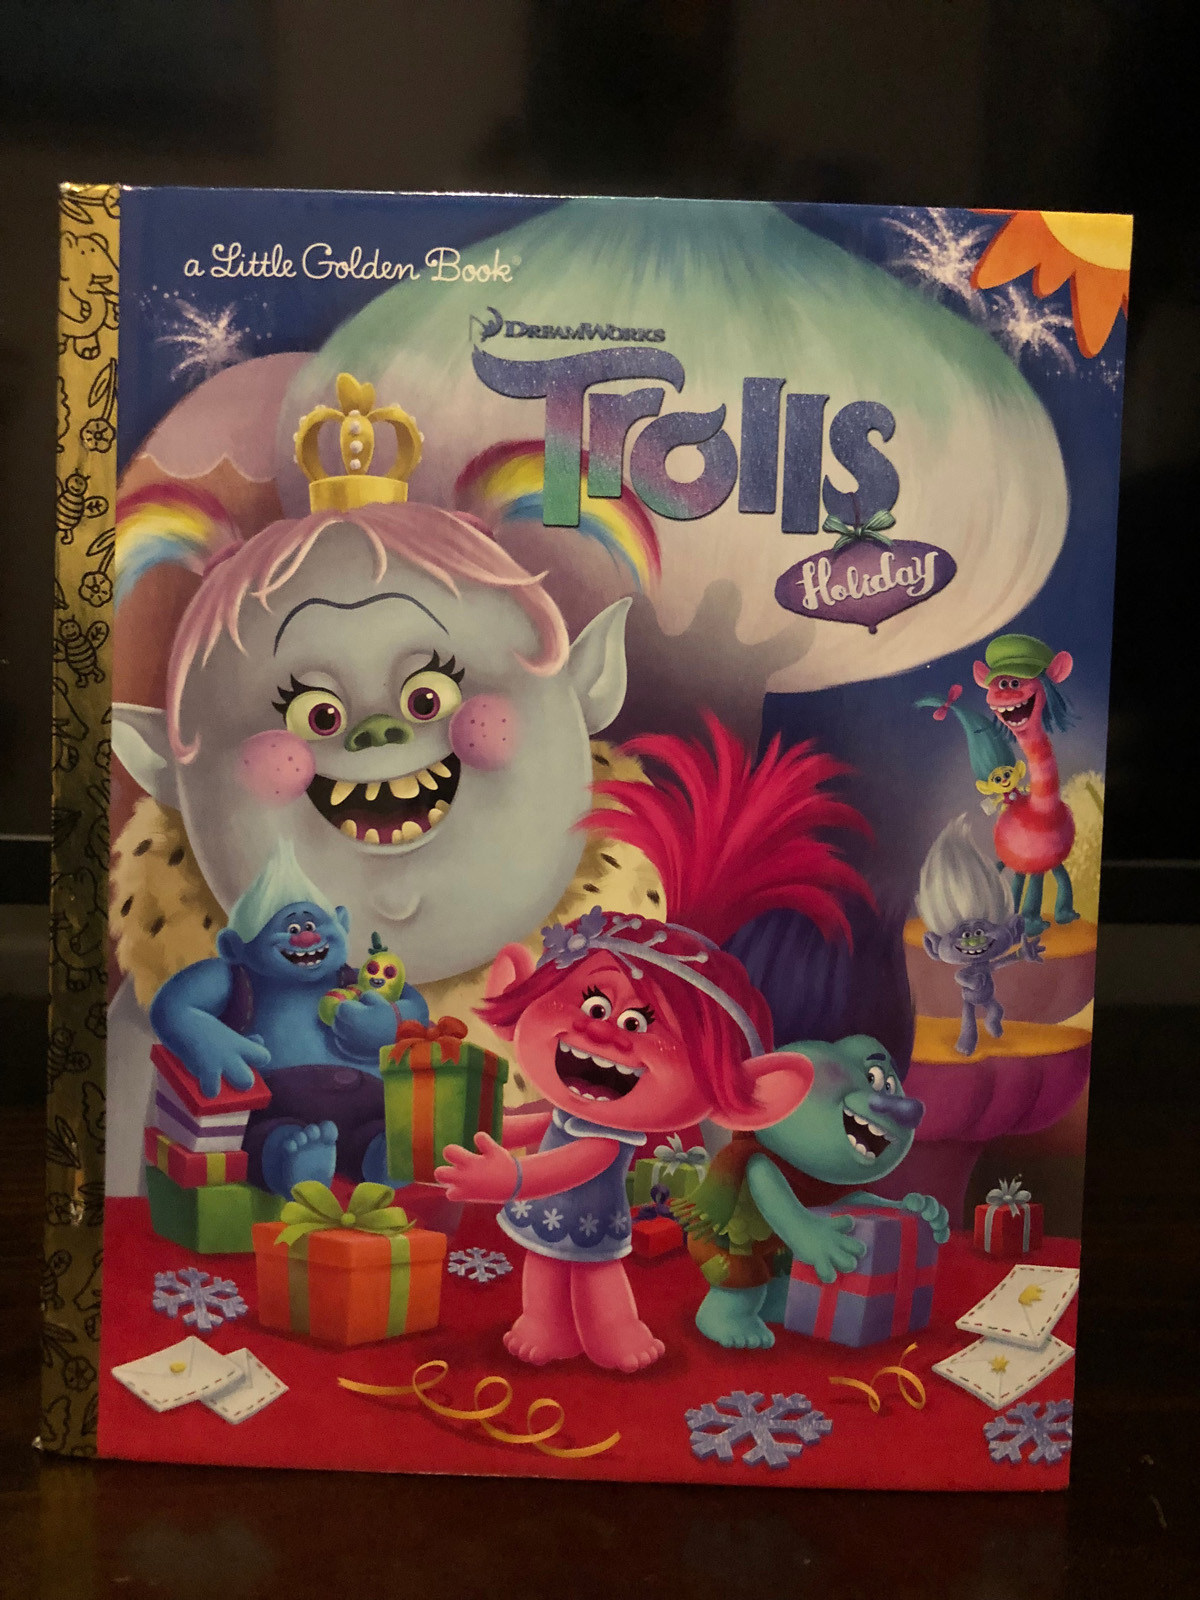 DreamWorks Trolls Holiday Little Golden Book